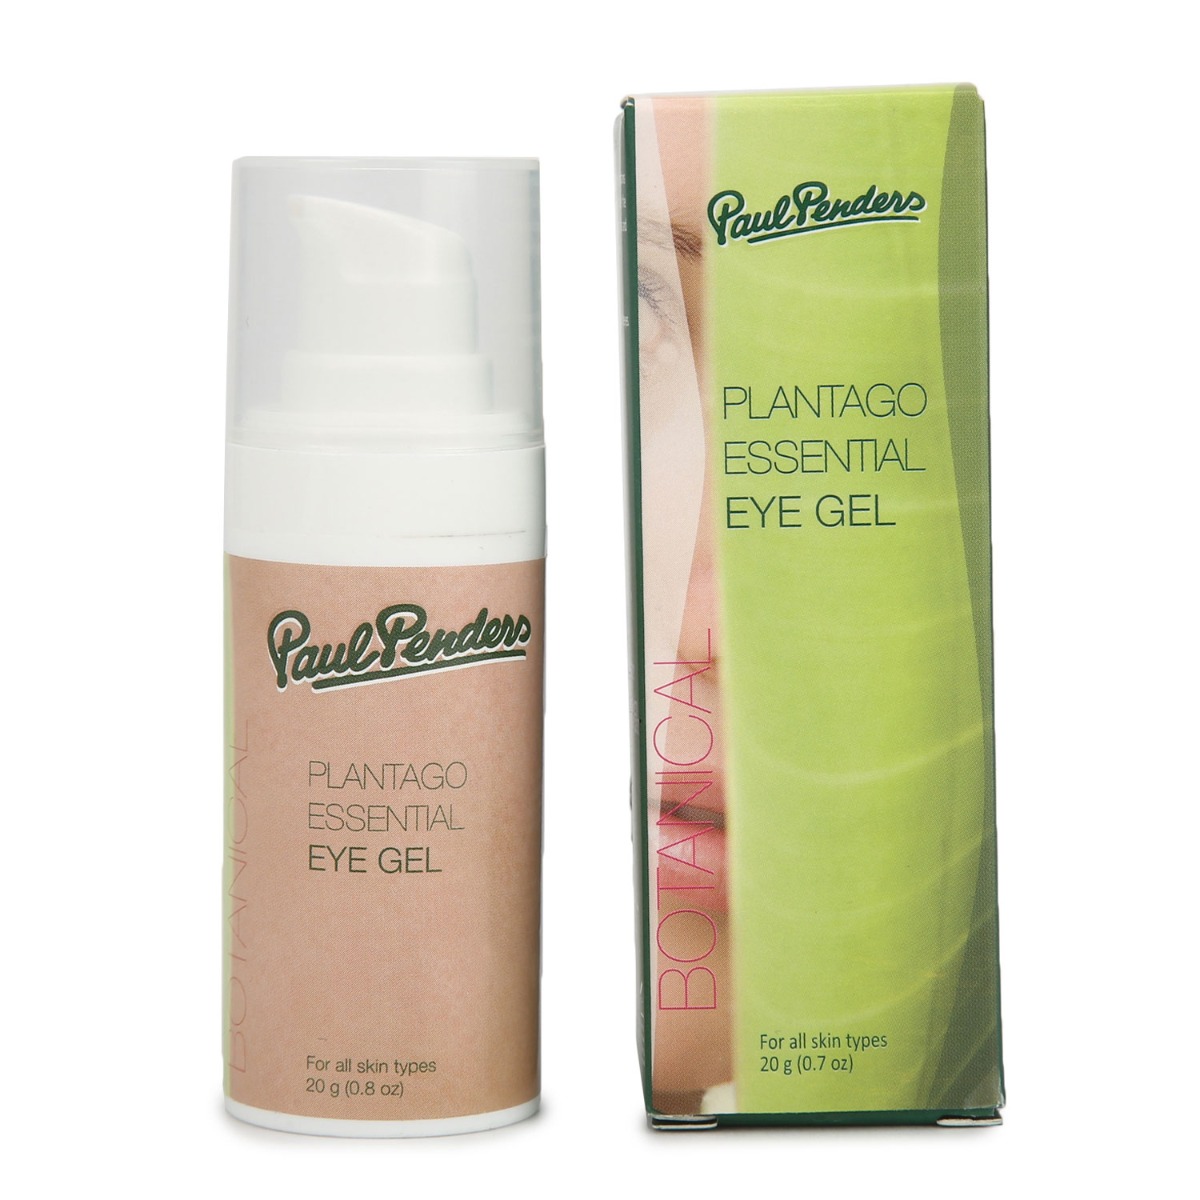 Paul Penders Plantago Essential Eye Gel, 20gm